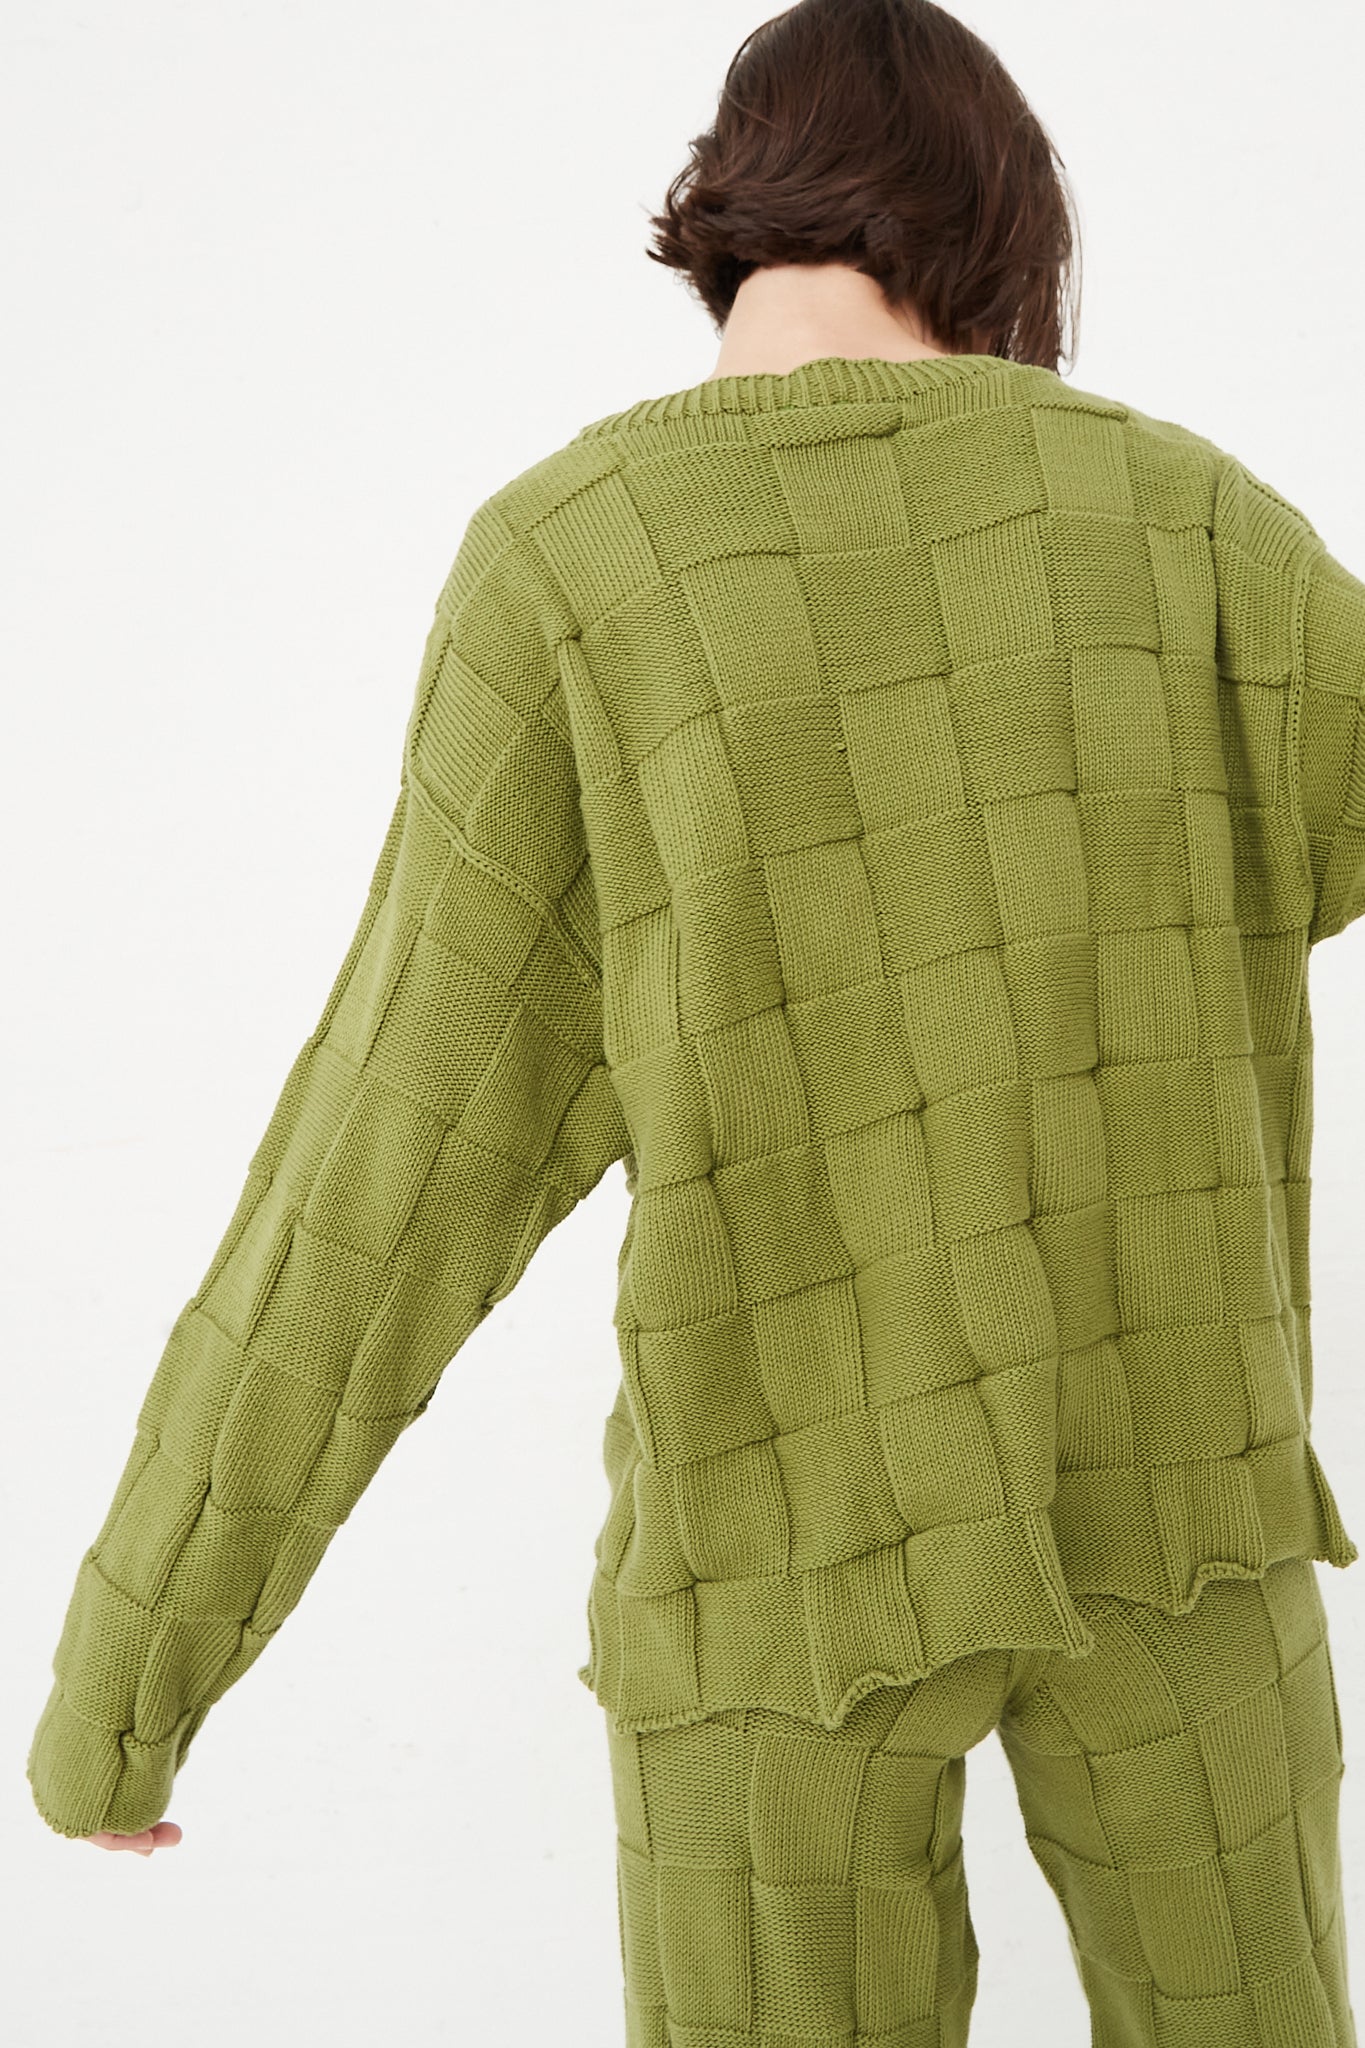 Baserange - Konak Sweater in Zek Green back view